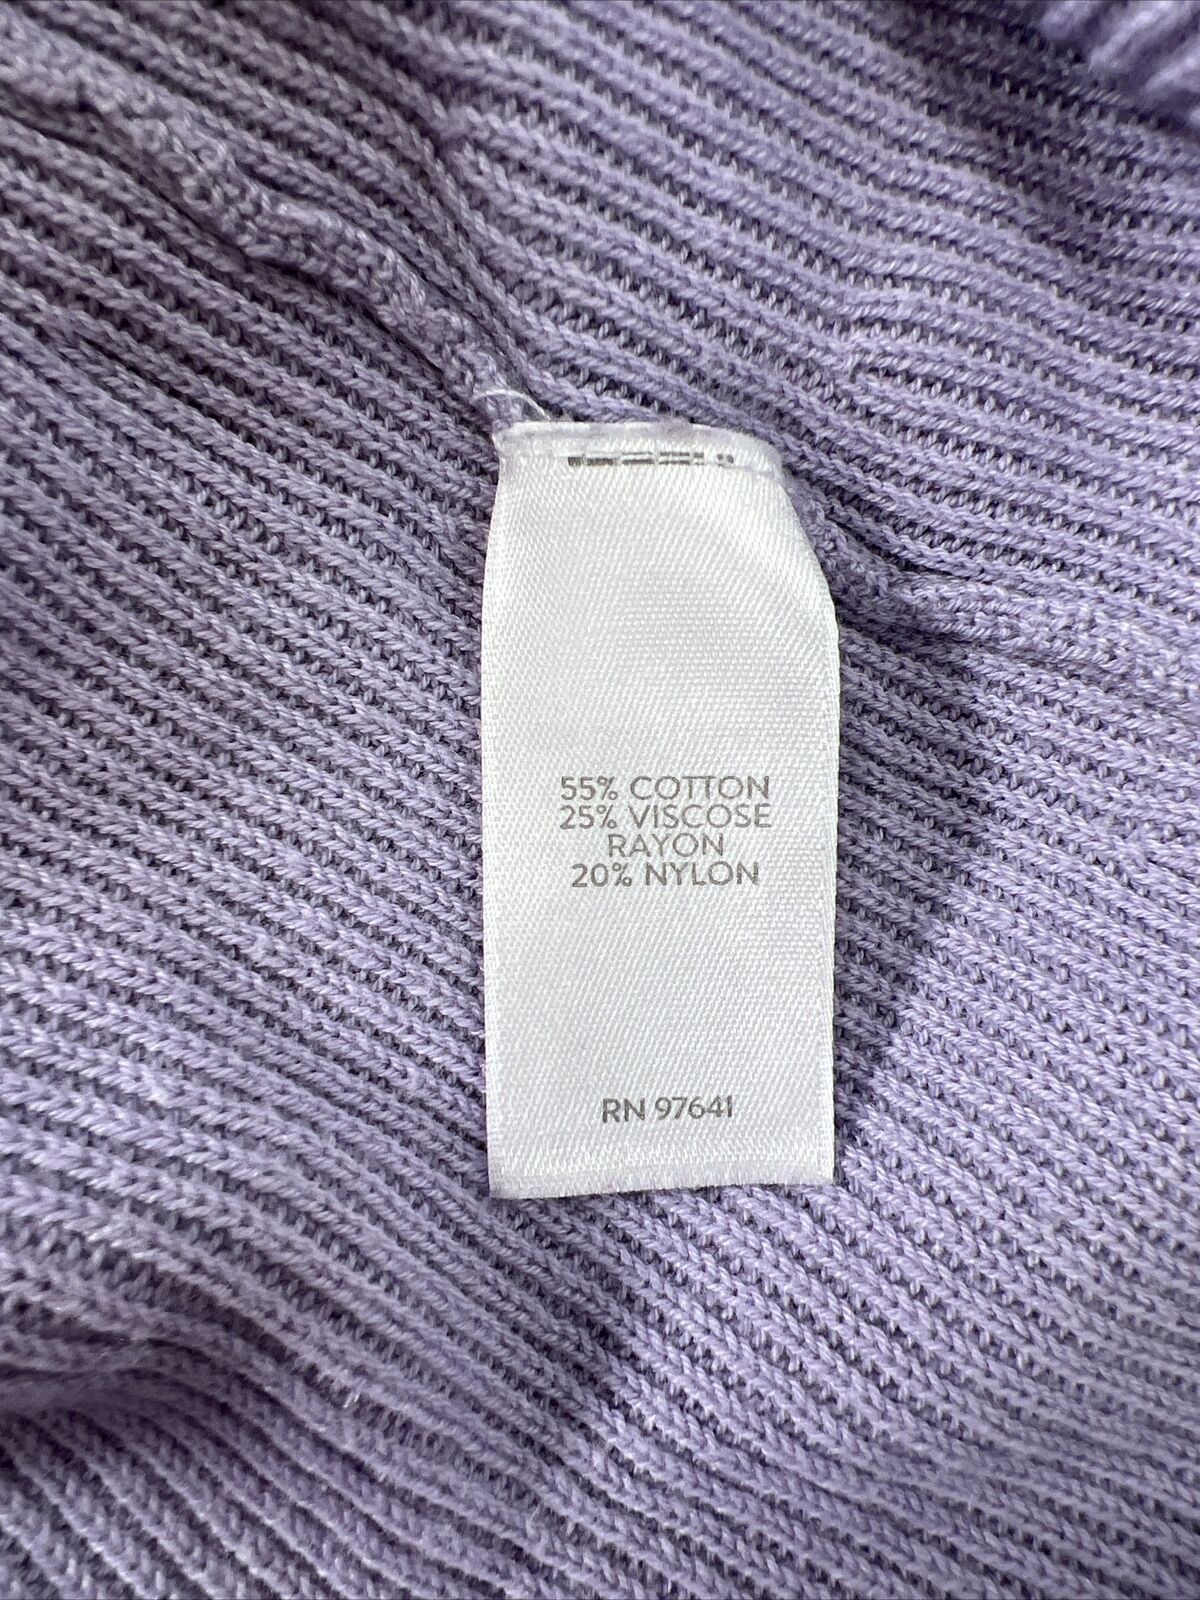 J. Jill Women's Purple 3/4 Sleeve Knit Sweater - M